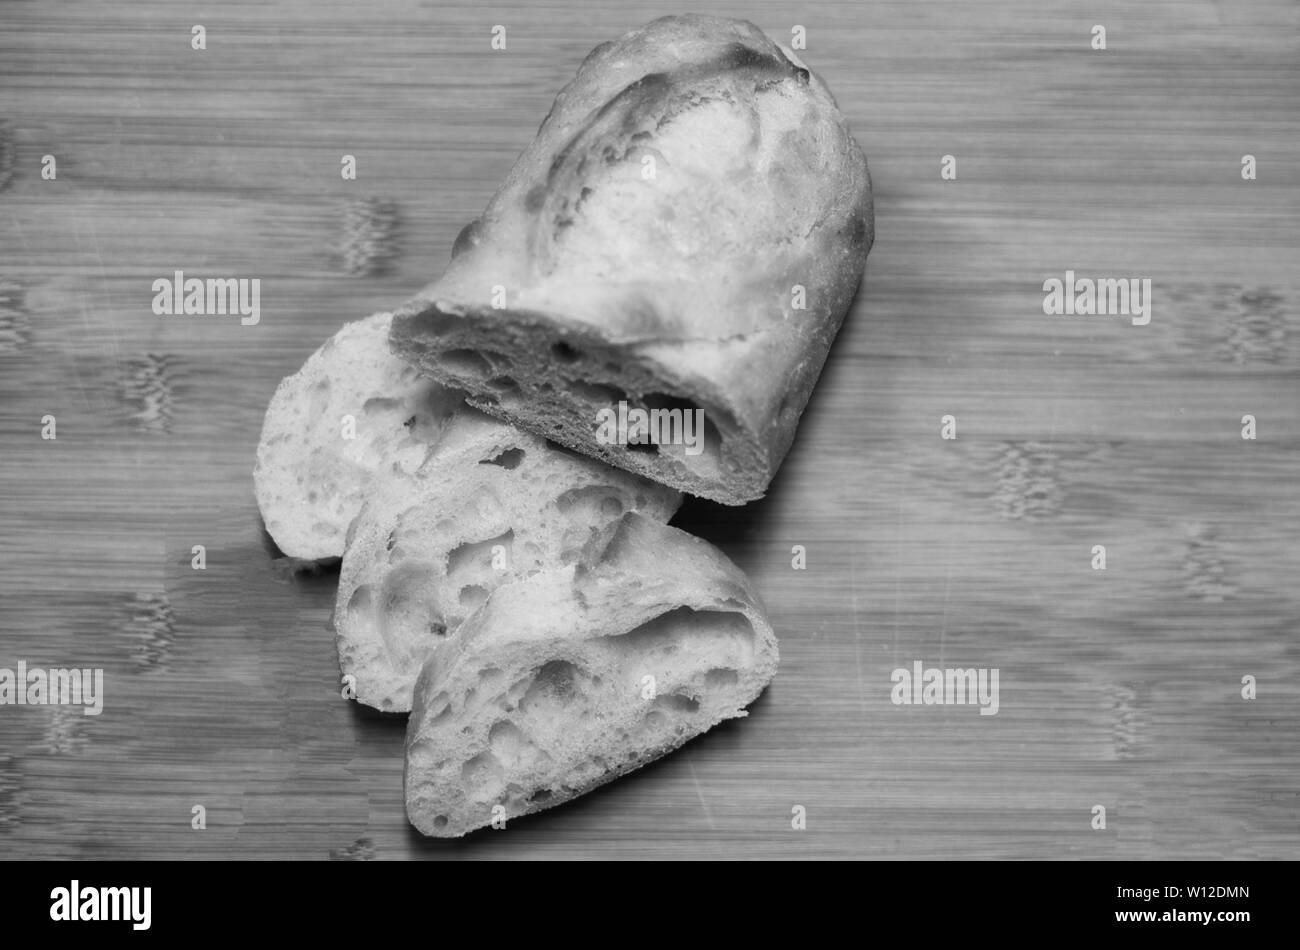 Le pain au levain a un goût et une texture qui lui est propre. Banque D'Images